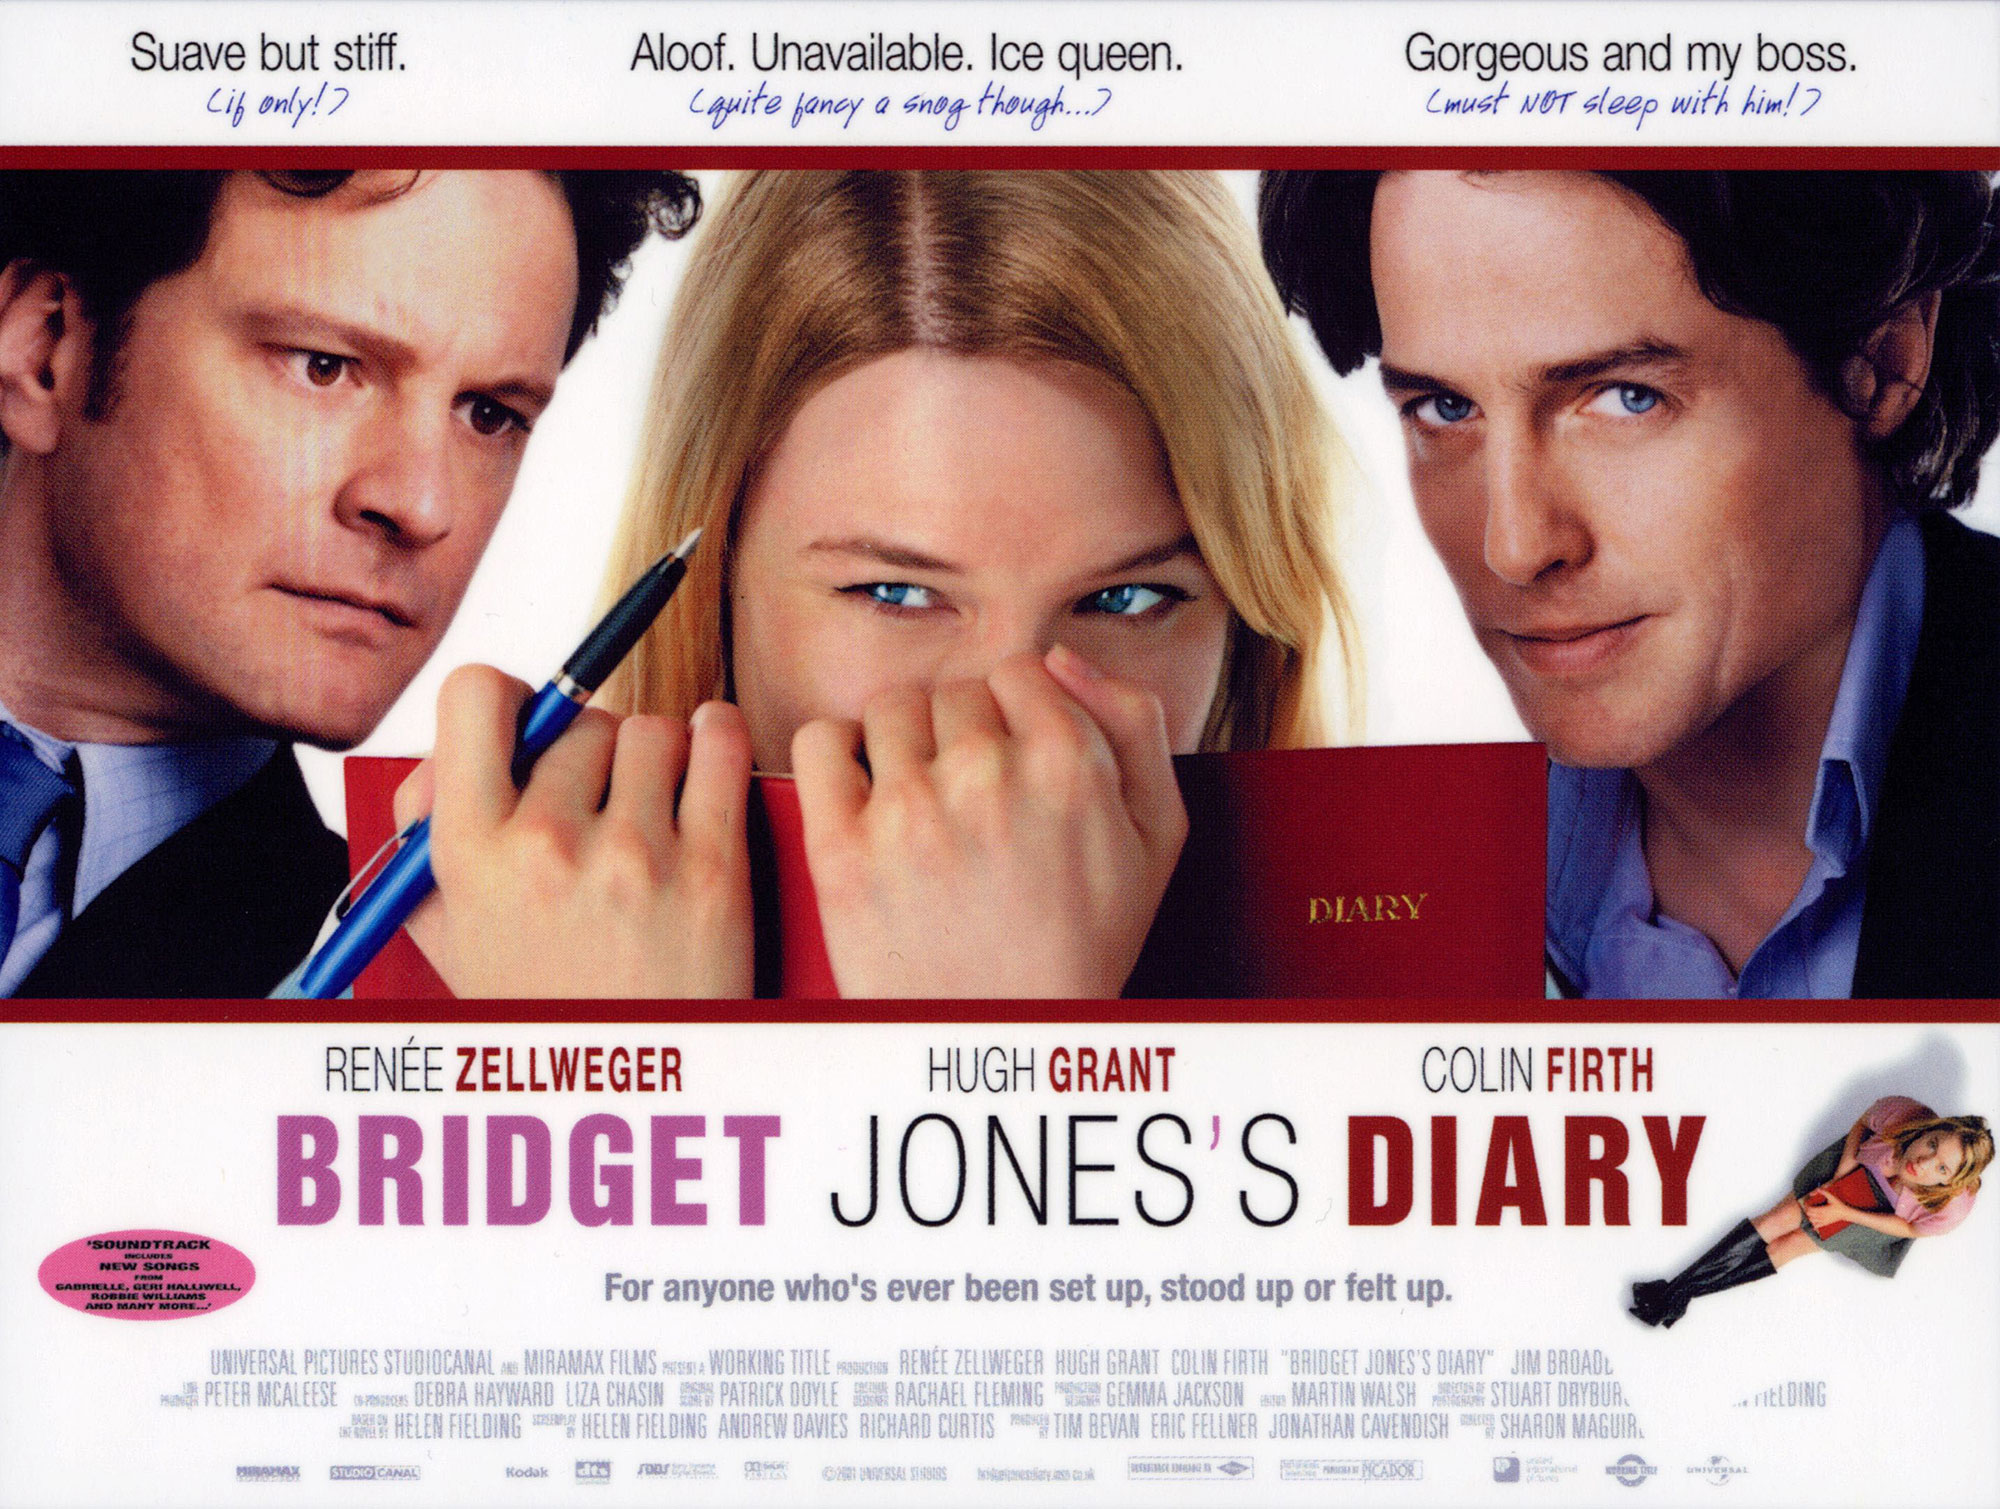 Colin Firth confirms Bridget Jones 3